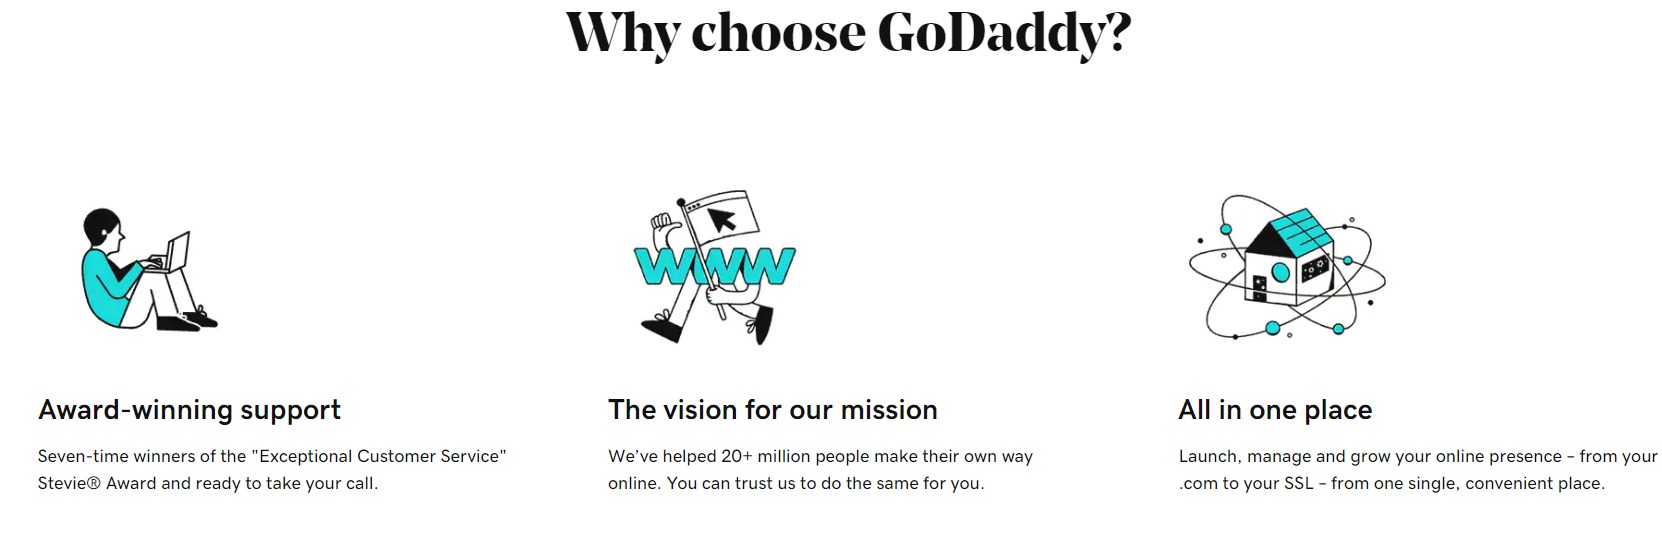 why choose Godaddy